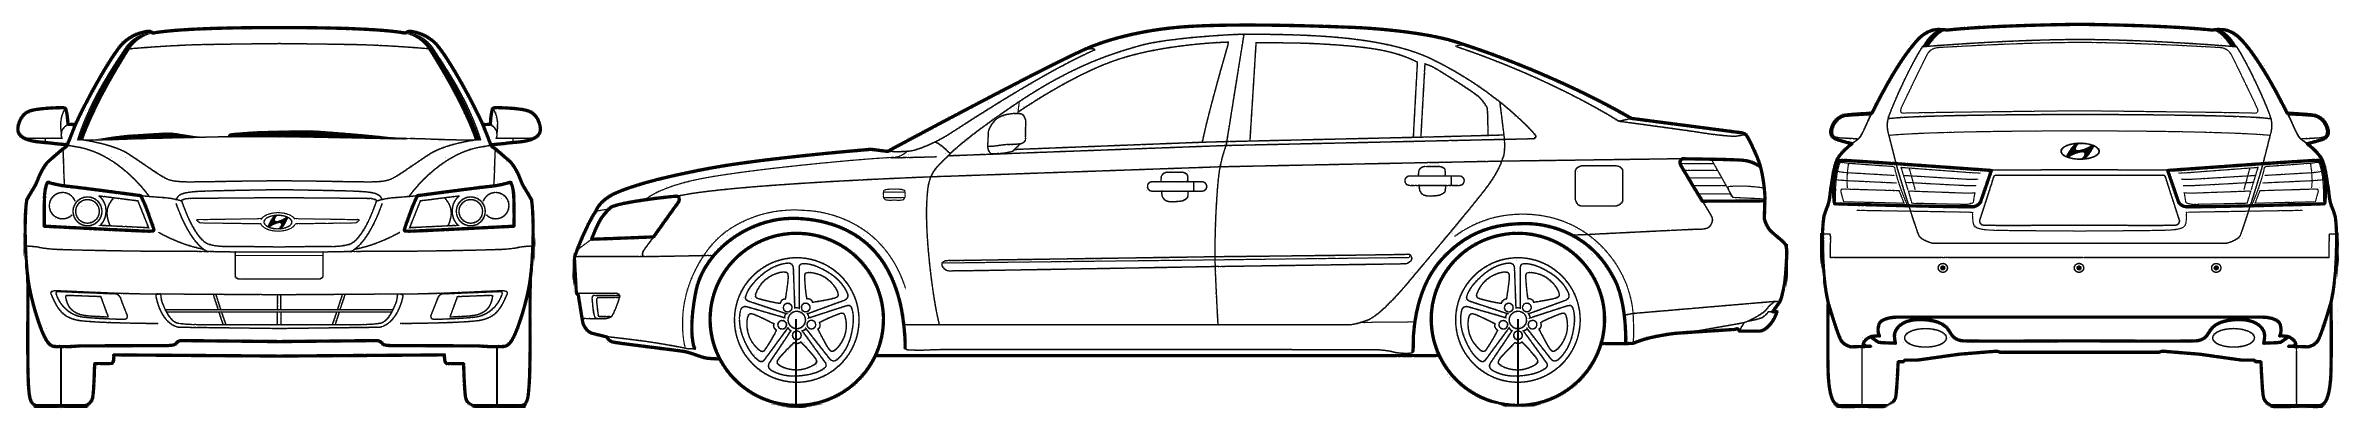 Car Hyundai Sonata 2006